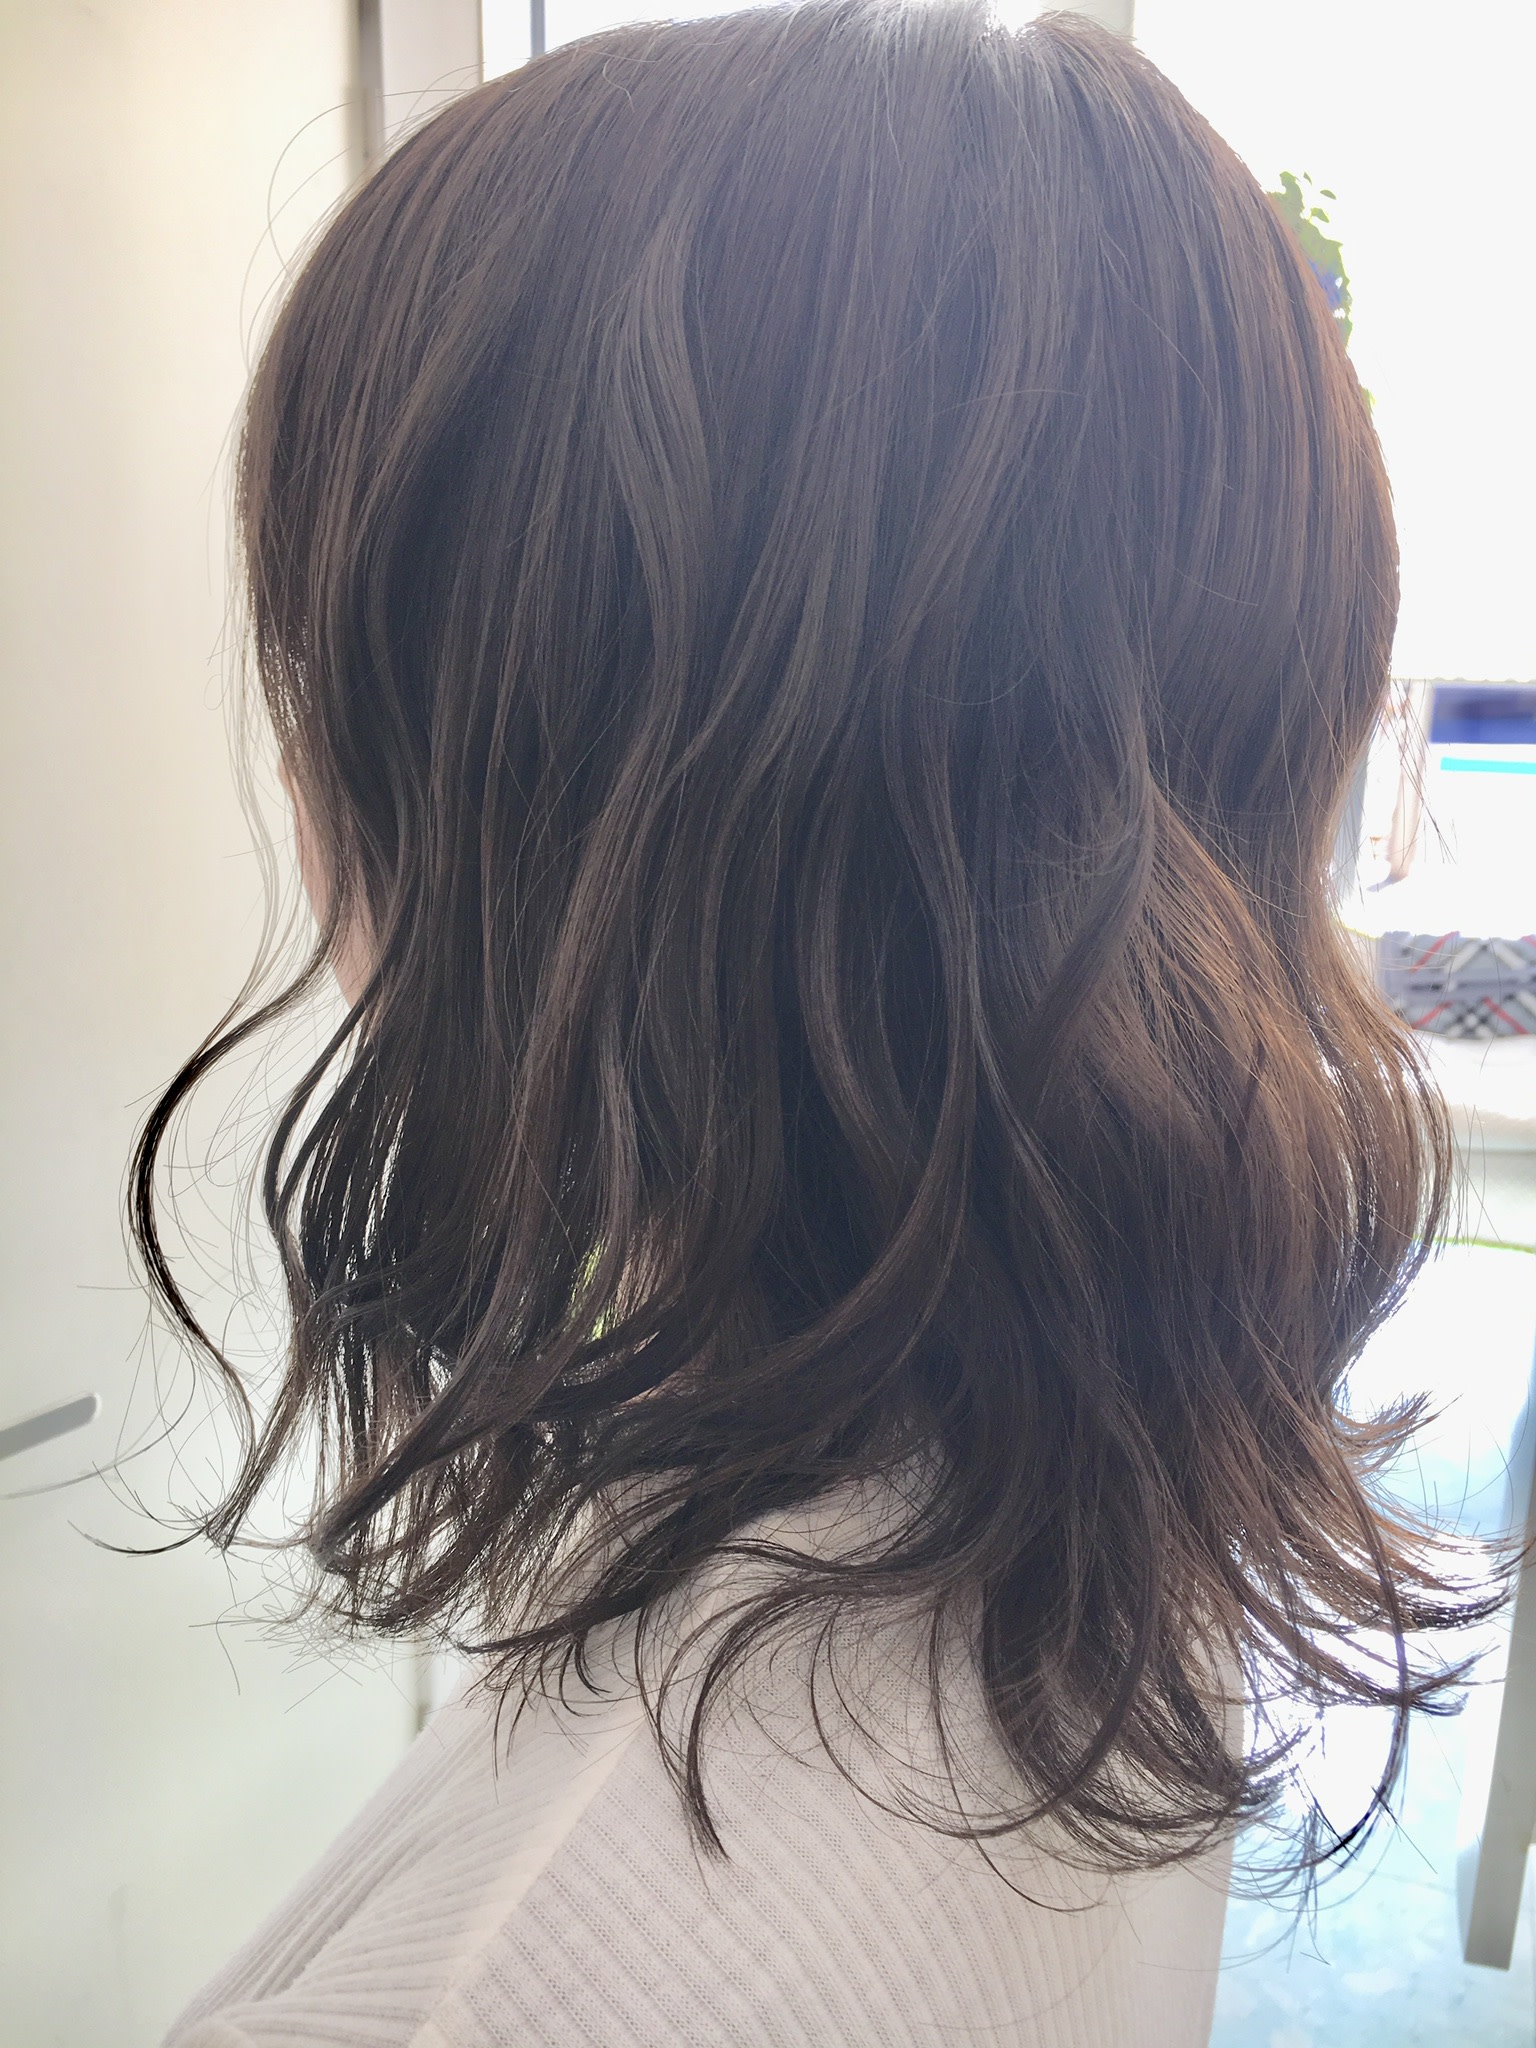 izawa hair make salon【イザワヘアメイクサロン】のスタイル紹介。透明感たっぷりグレージュカラー